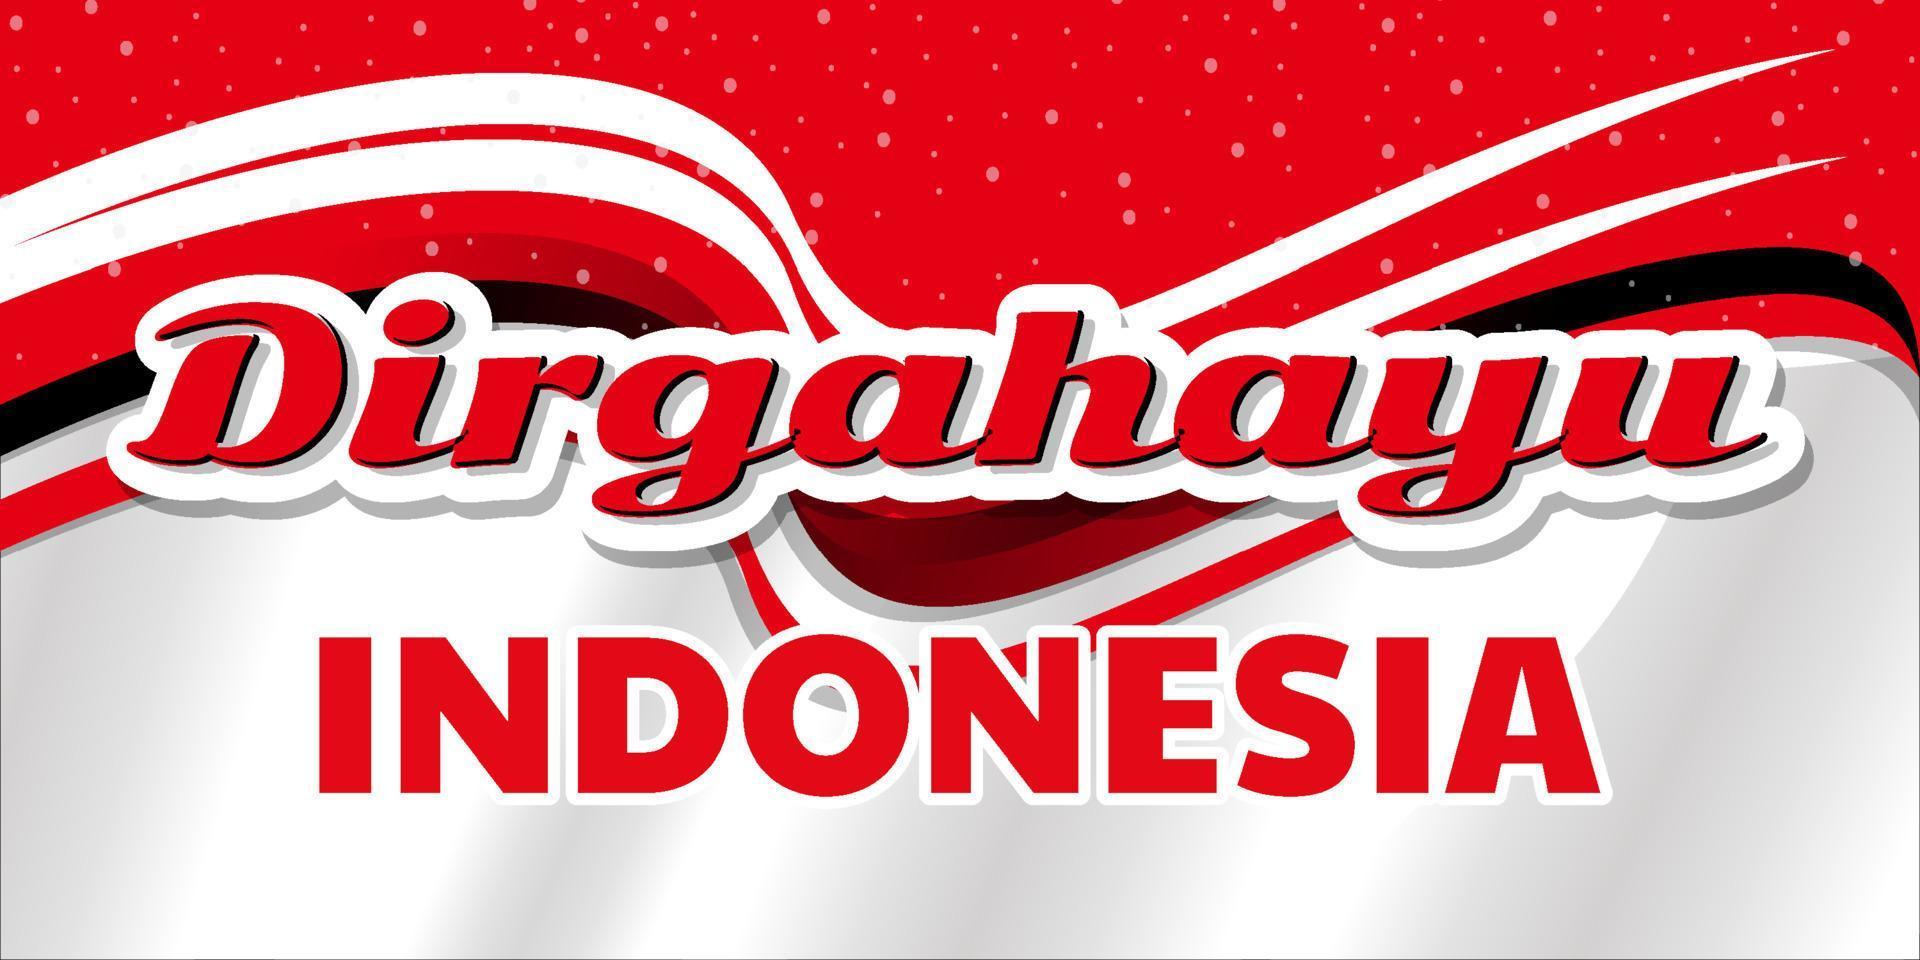 indonesisches unabhängigkeitstag-fahnendesign mit abstraktem kreativem rot-weißem hintergrund vektor